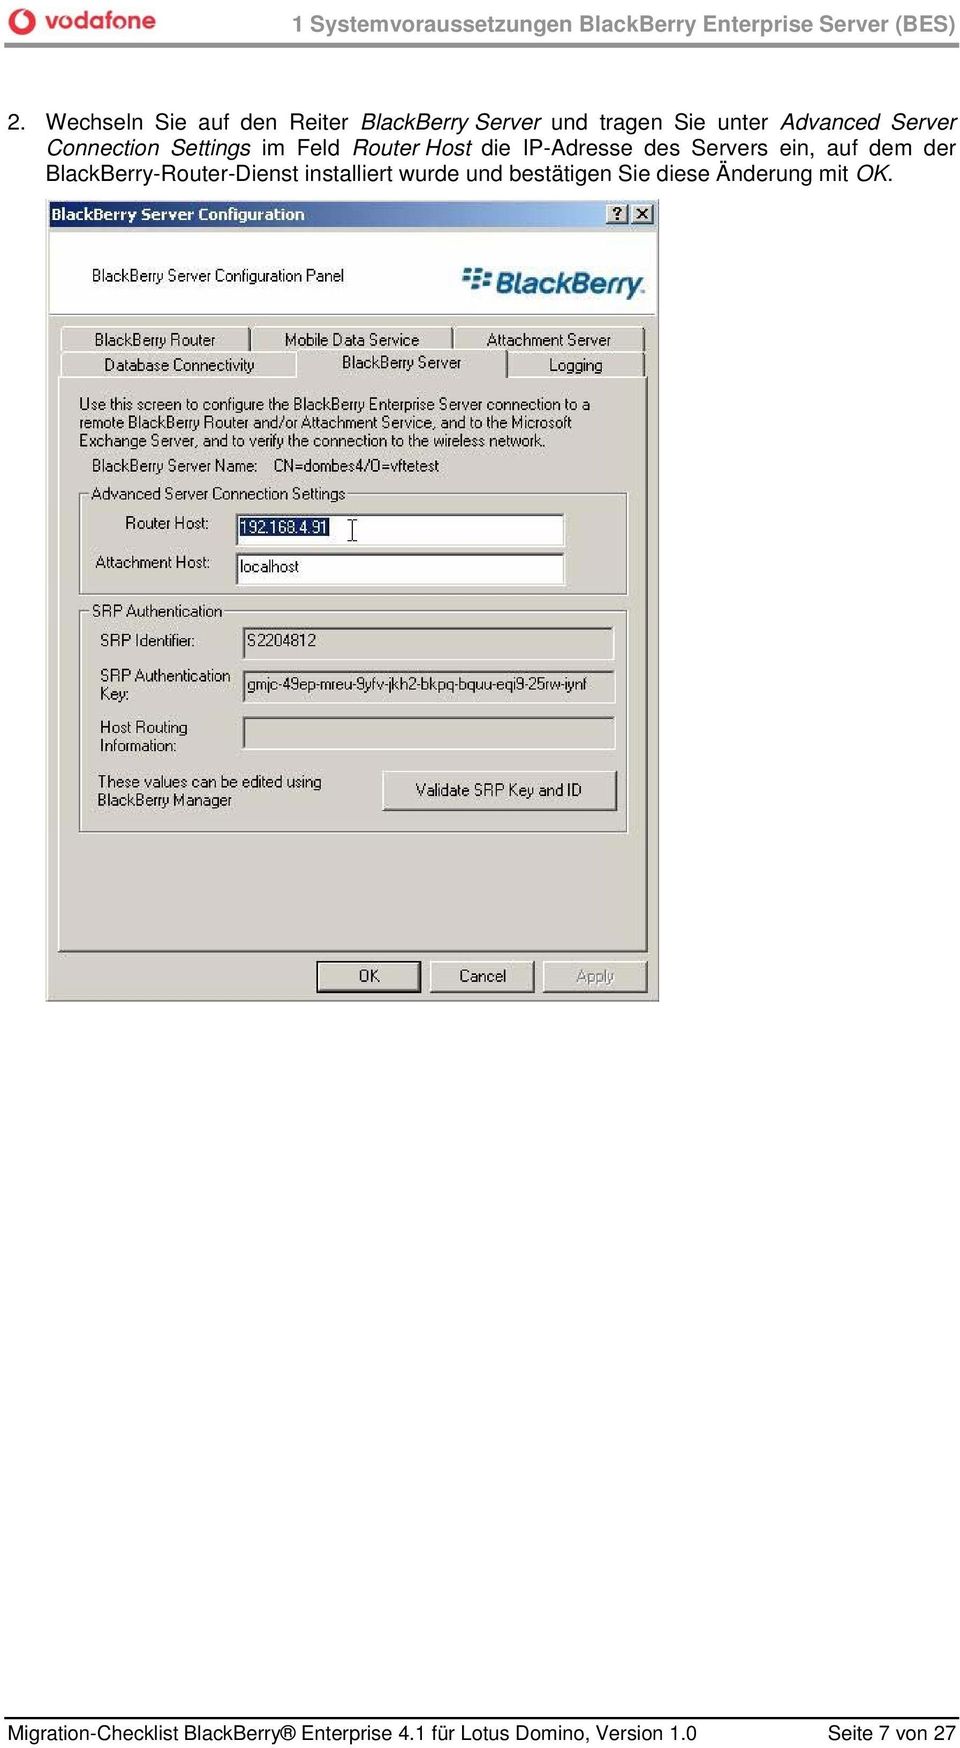 Settings im Feld Router Host die IP-Adresse des Servers ein, auf dem der BlackBerry-Router-Dienst